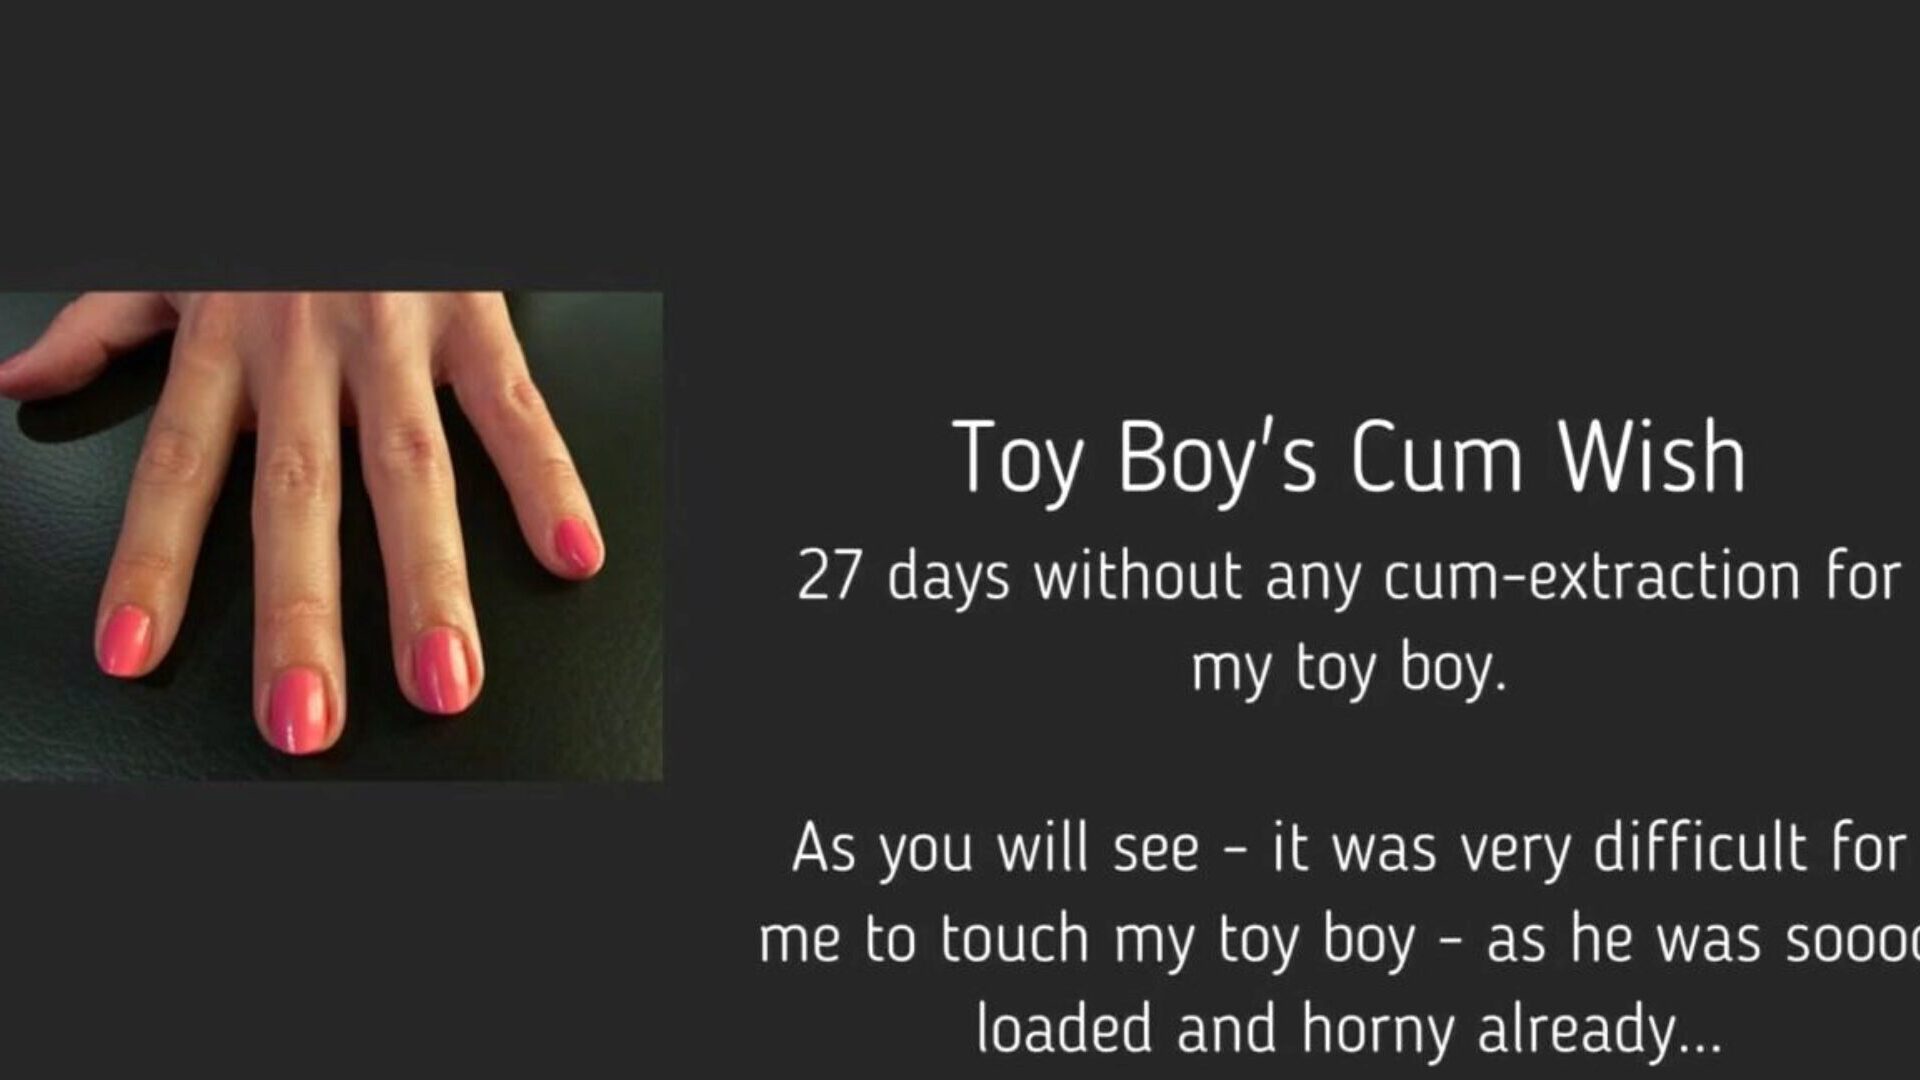 toy boy's cum wish: free femdom handjob hd porn video 95 παρακολουθήστε το παιχνίδι boy cum cum wish tube orgy movie δωρεάν στο xhamster, με την πιο σέξι γυναίκα της γυναικείας handjob bel ami cum & tube boy hd porno σκηνές ταινιών συναυλίες